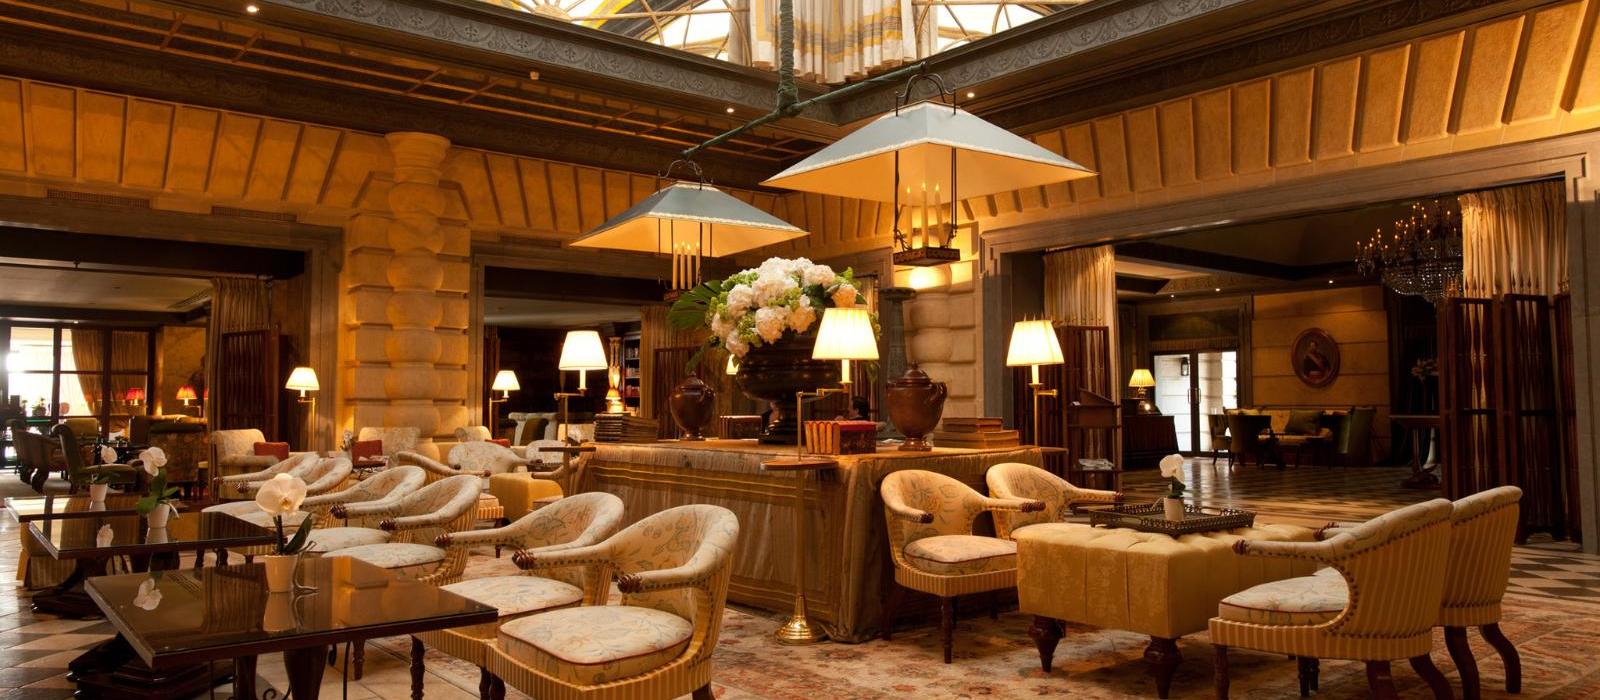 蒙特卡洛大都会酒店(Hotel Metropole Monte-Carlo) 大堂图片  www.lhw.cn